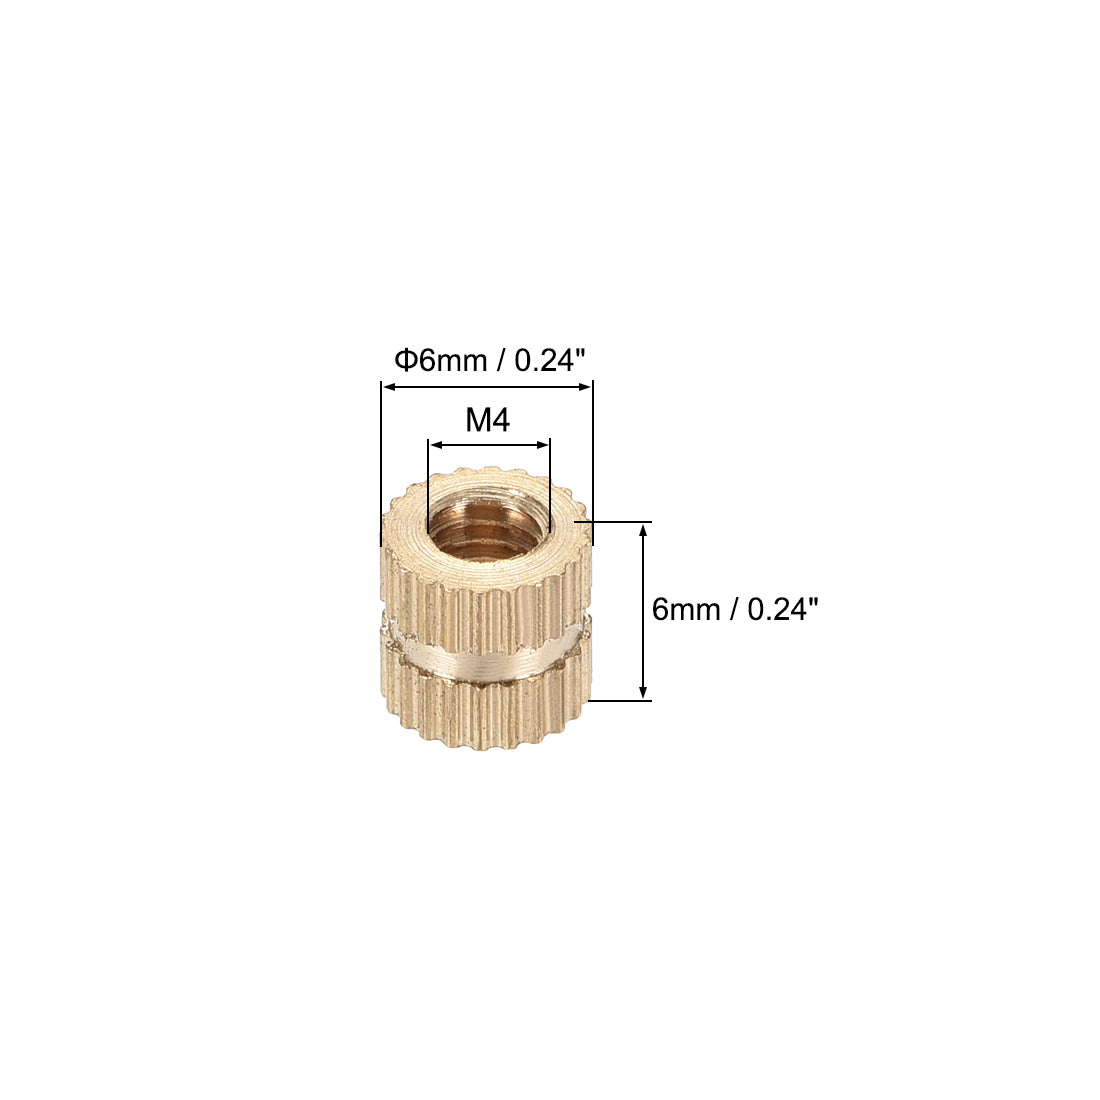 uxcell Uxcell Knurled Insert Nuts, M4 x 6mm(L) x 6mm(OD) Female Thread Brass Embedment Assortment Kit, 100 Pcs